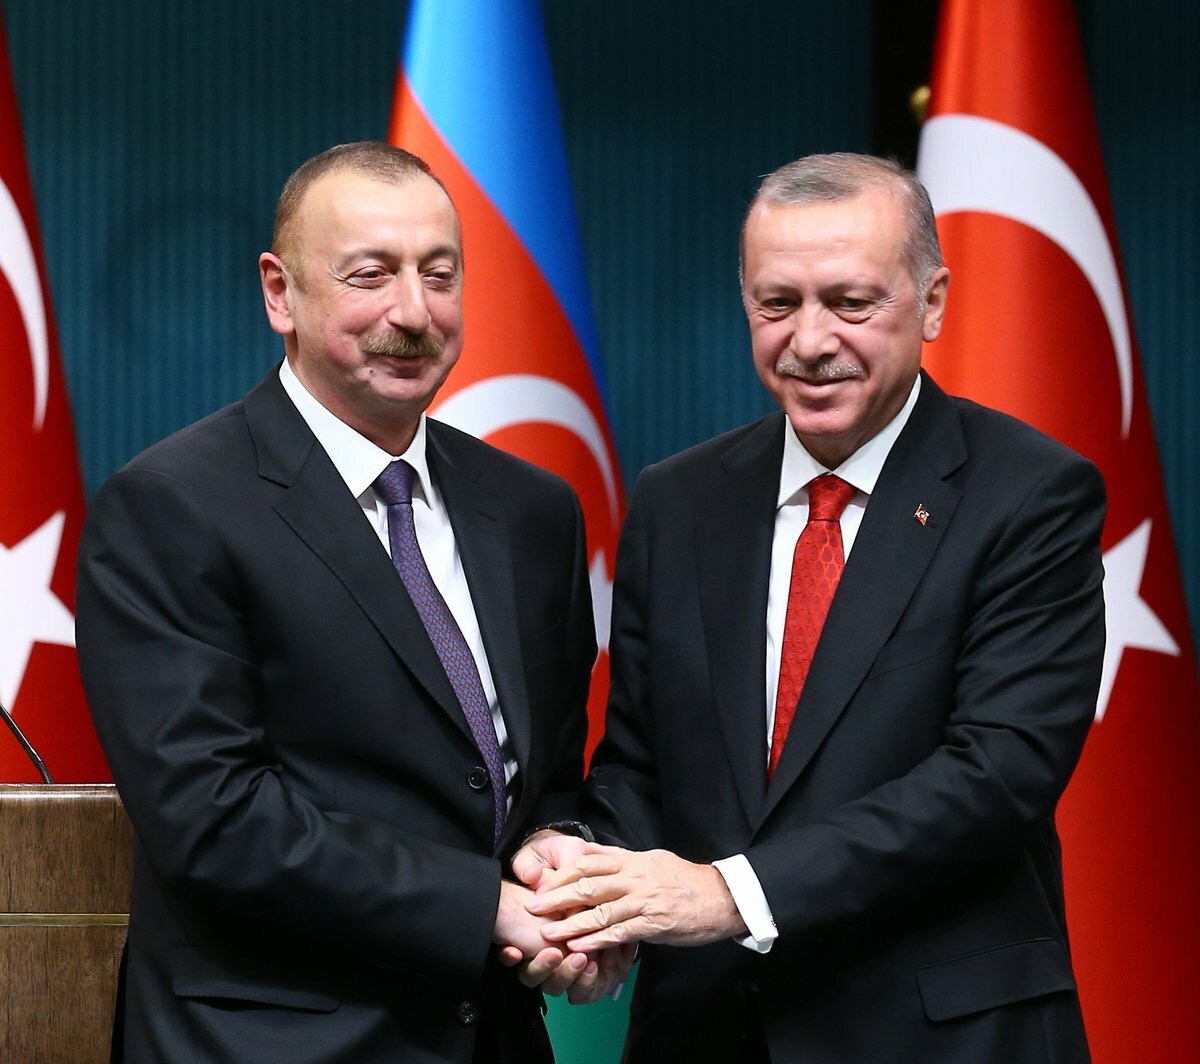 Ադրբեջանը մտադիր է էլ ավելի ընդլայնել համագործակցությունը «եղբայրական Թուրքիայի» հետ